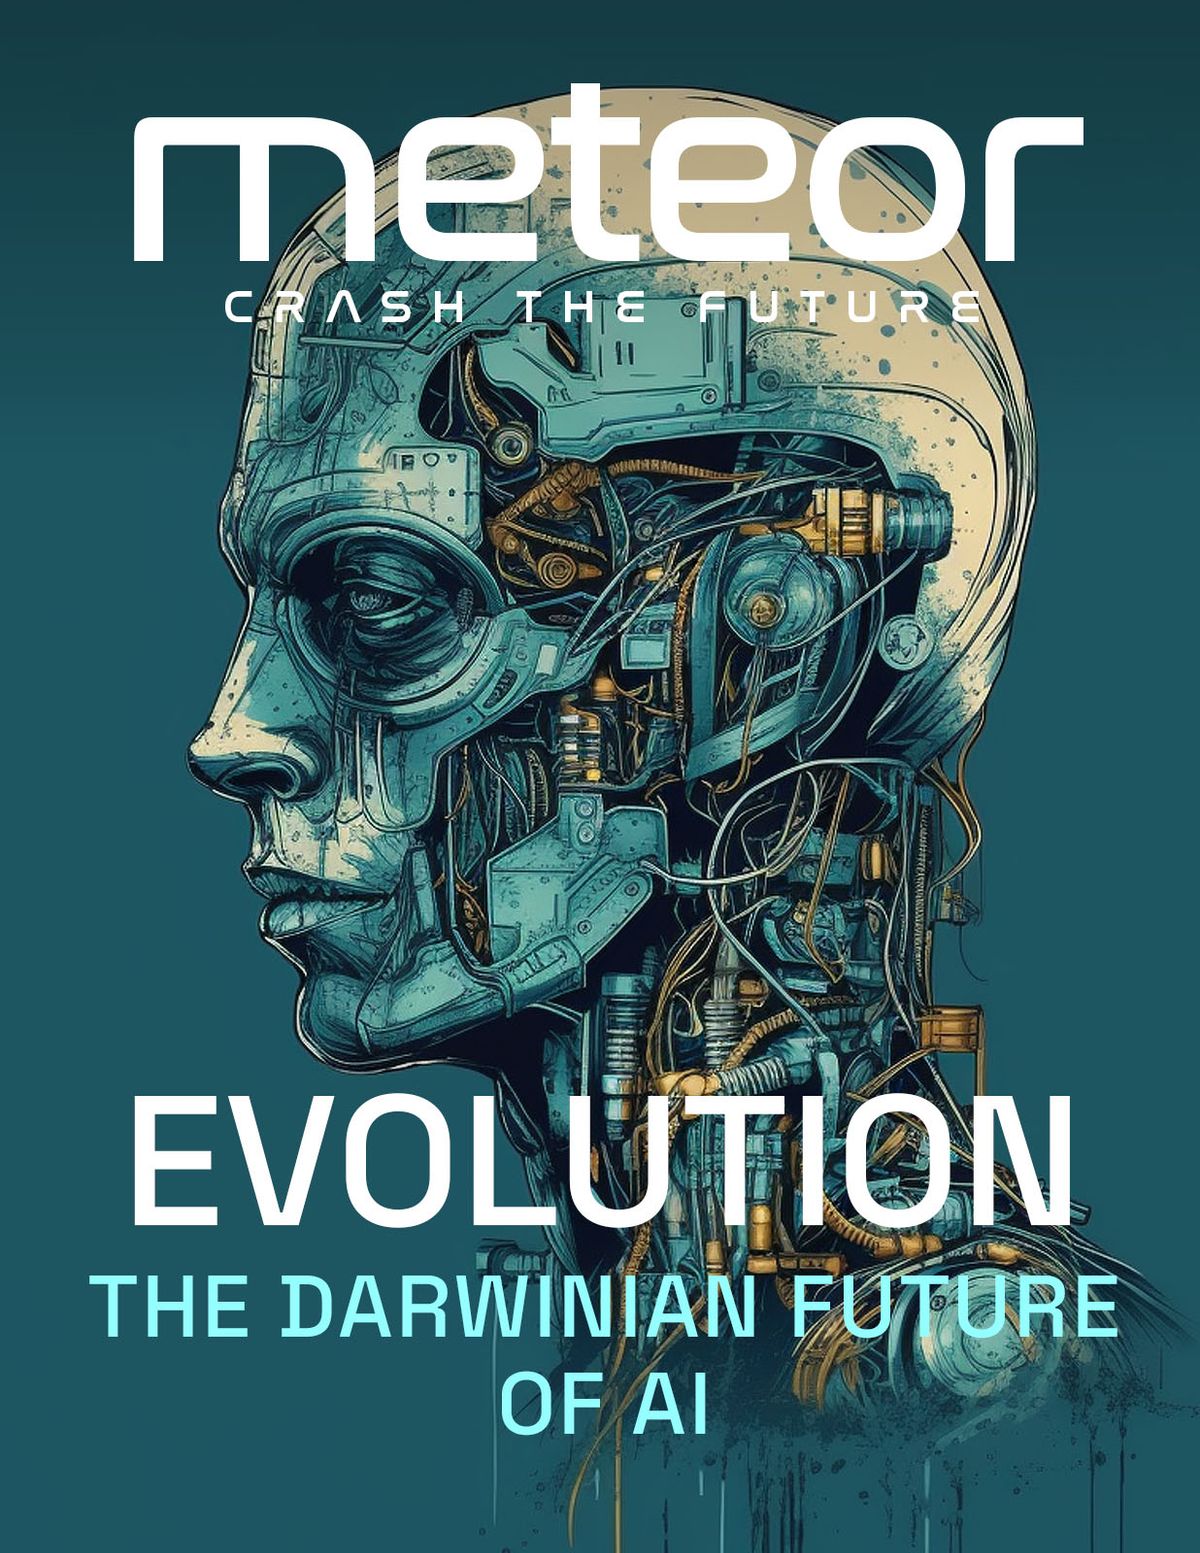 The Darwinian Future of AI